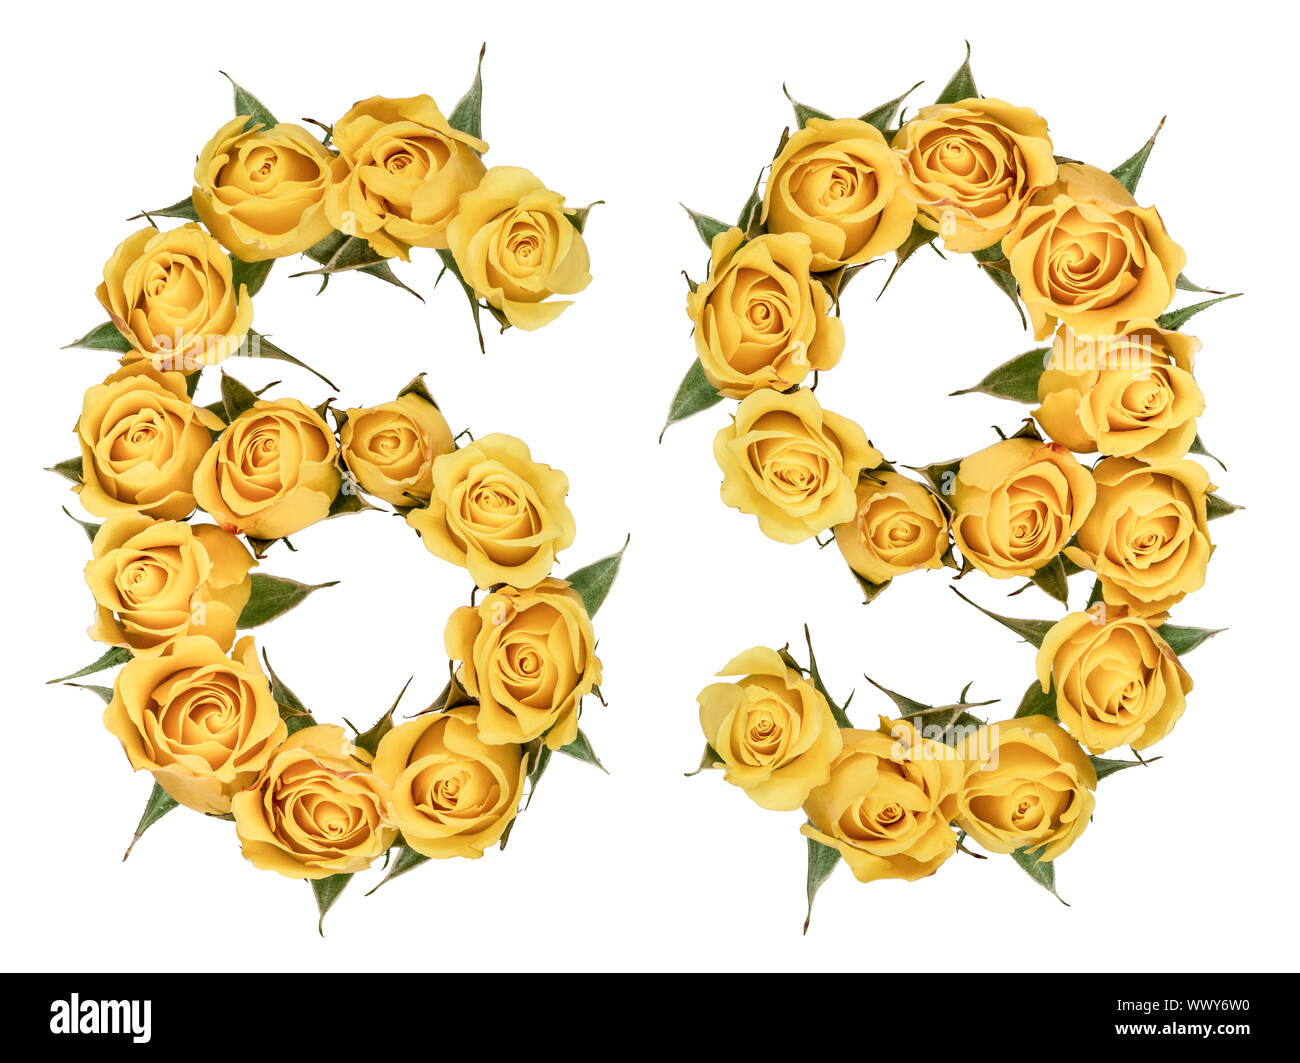 Chiffre arabe 69, soixante-neuf, de fleurs de rose, jaune isolé sur fond blanc Banque D'Images